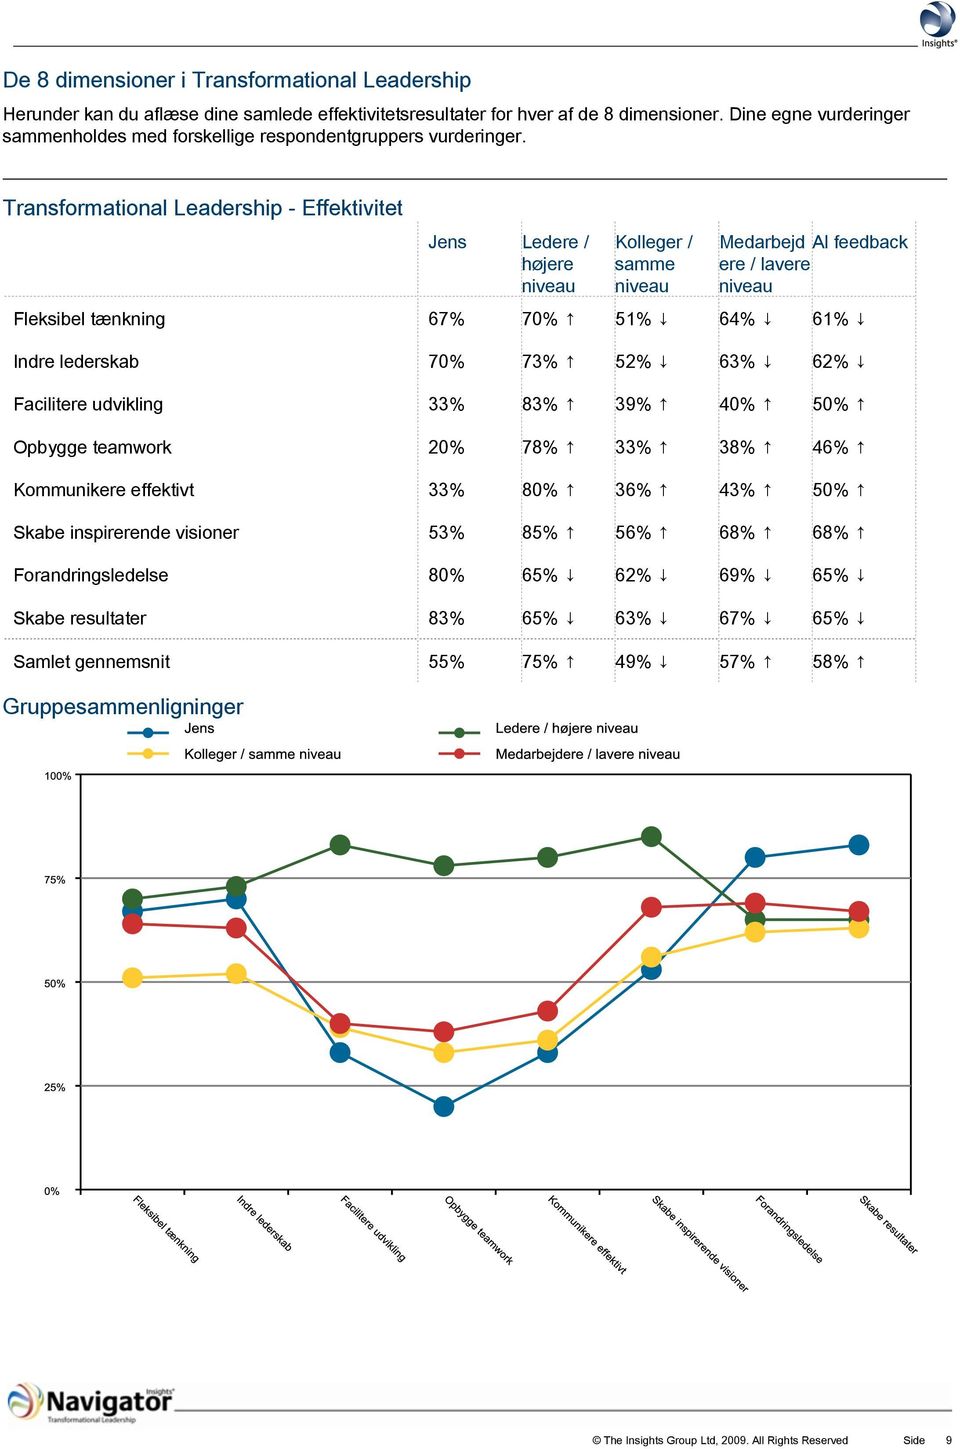 Transformational Leadership - Effektivitet Jens Ledere / højere Kolleger / samme Medarbejd Al feedback ere / lavere Fleksibel tænkning 67% 70% 51% 64% 61% Indre lederskab 70% 73% 52% 63% 62%